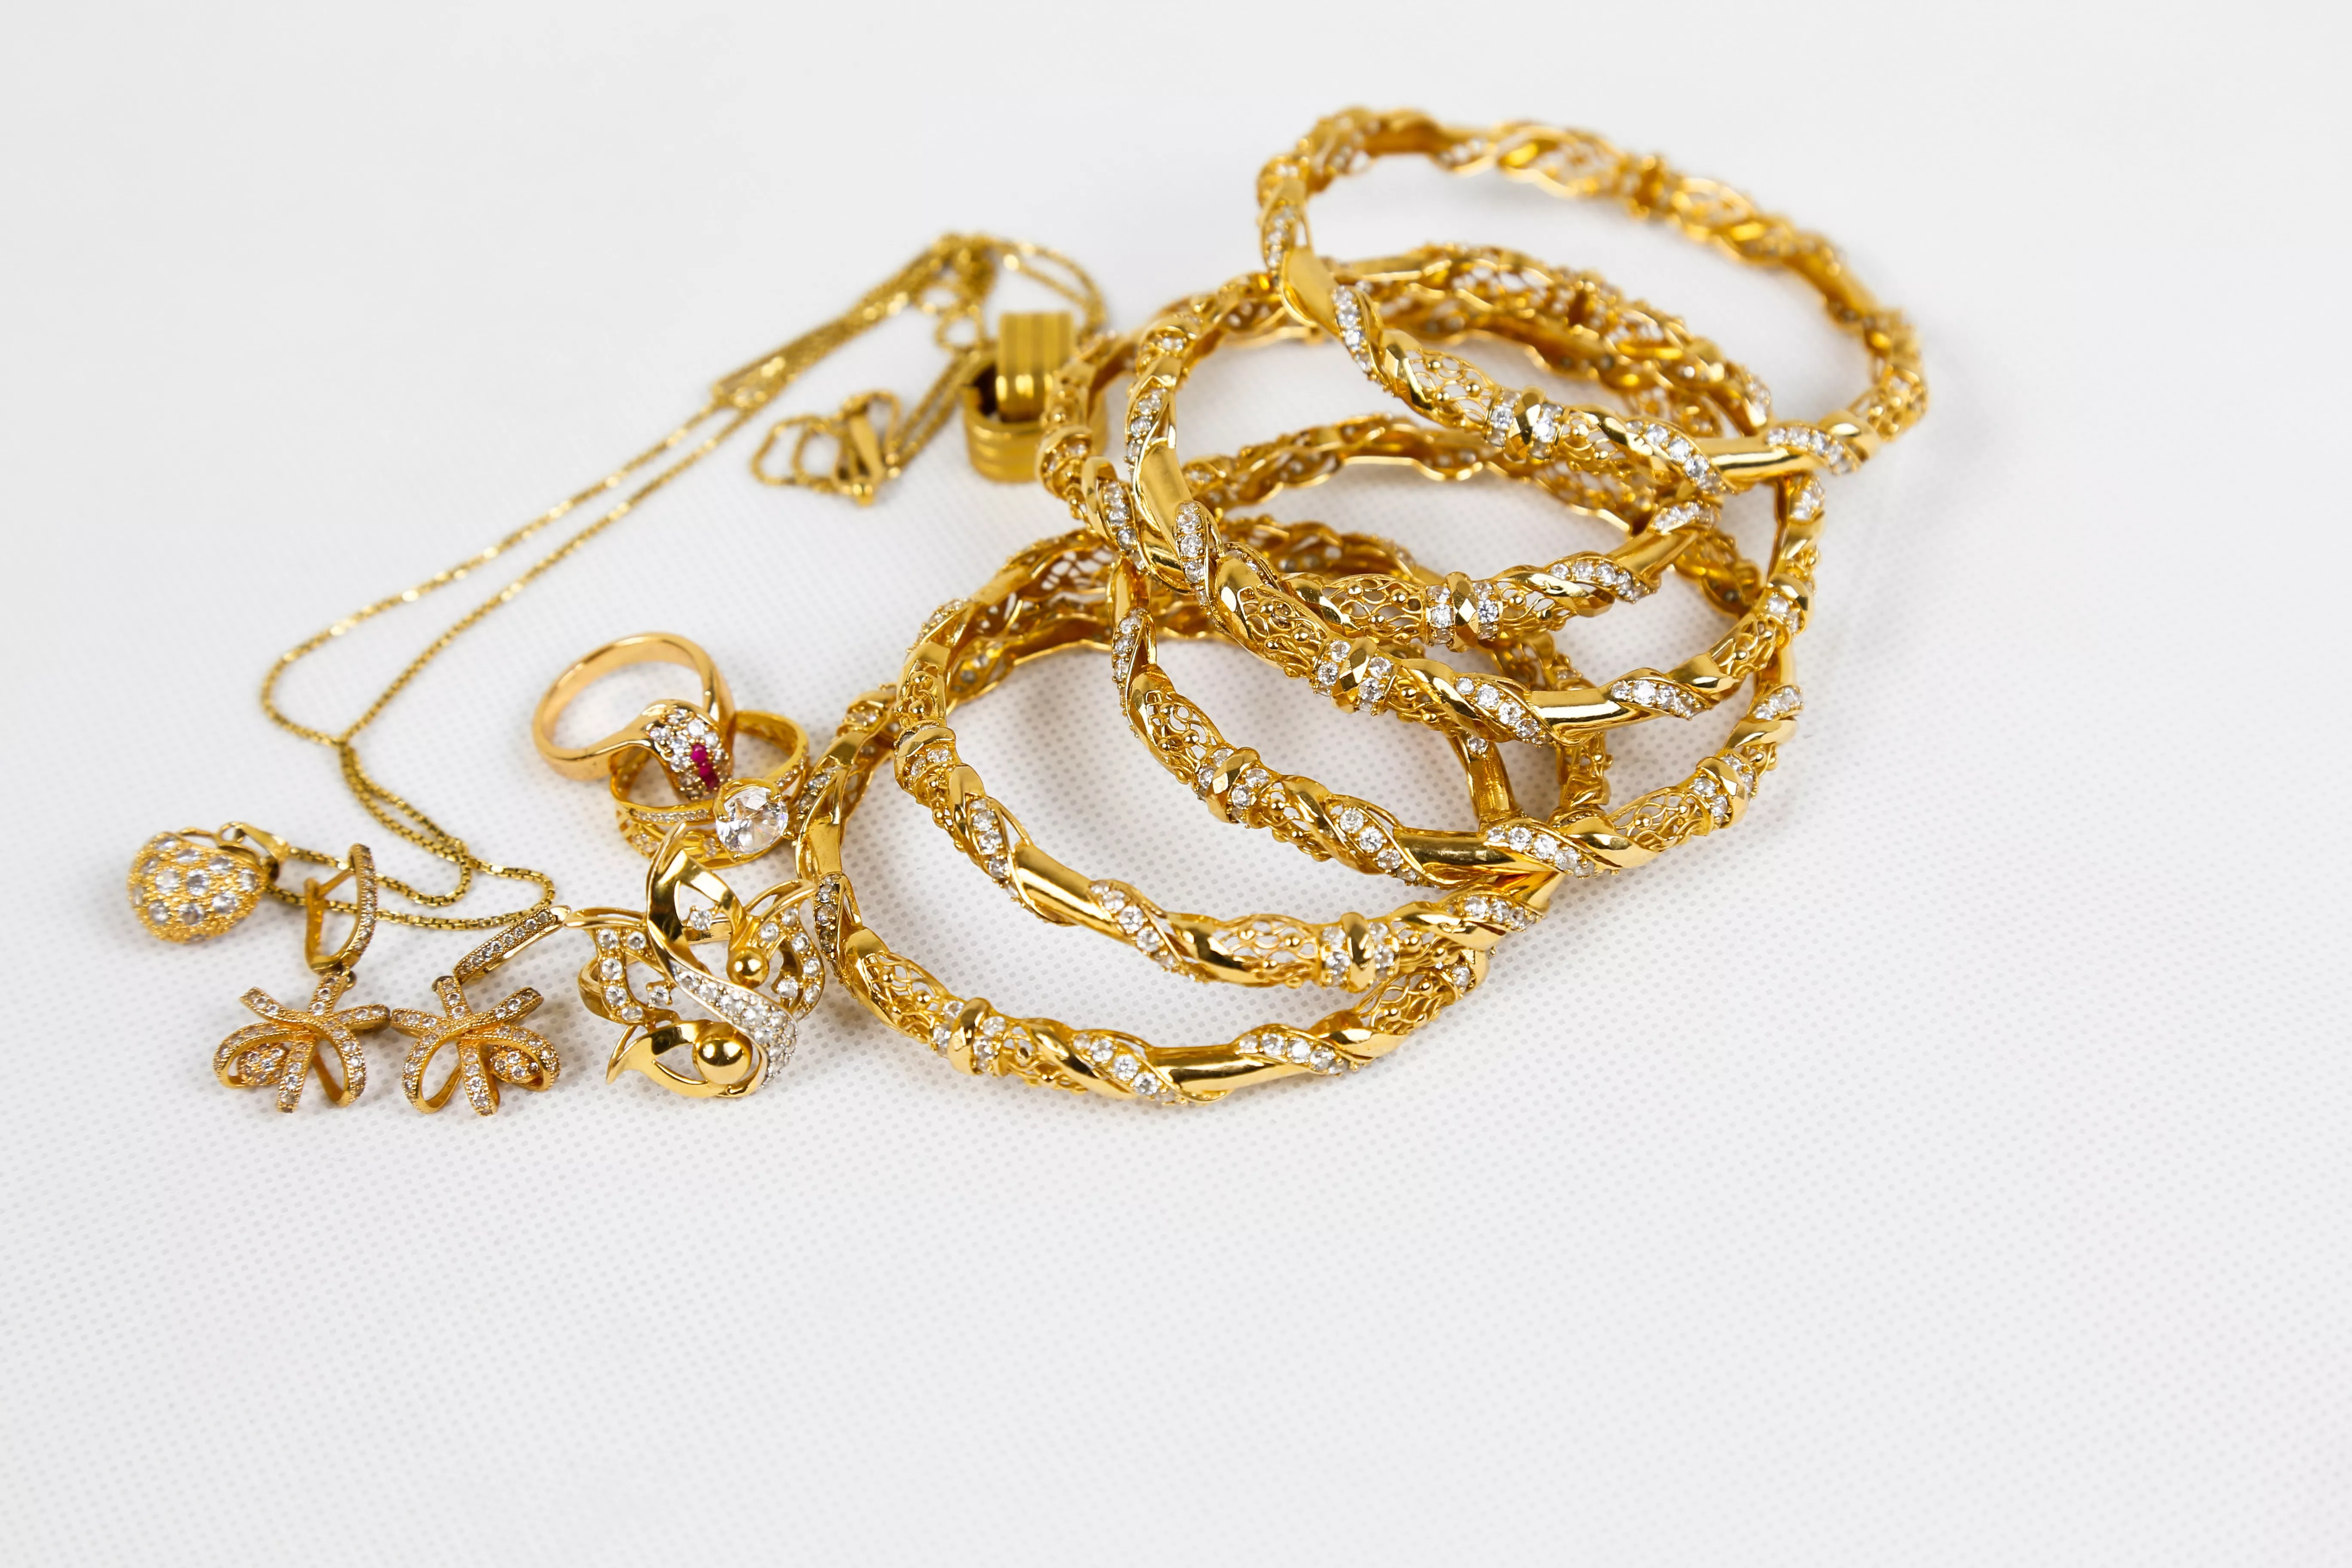 黃金飾品、珠寶首飾為常見的嫁妝。